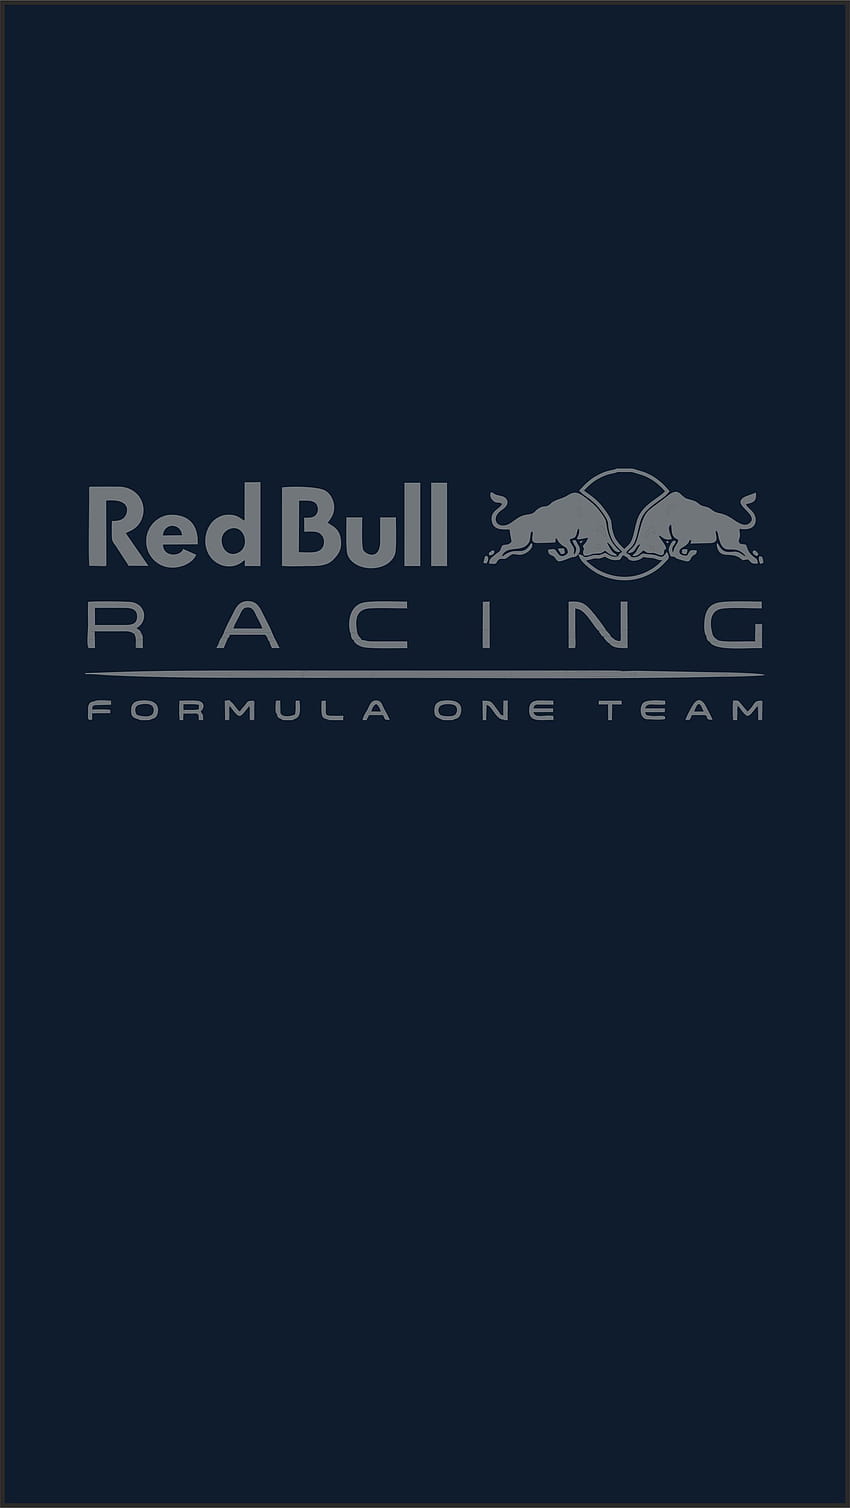 Red Bull Racing, f1 logo phone HD phone wallpaper